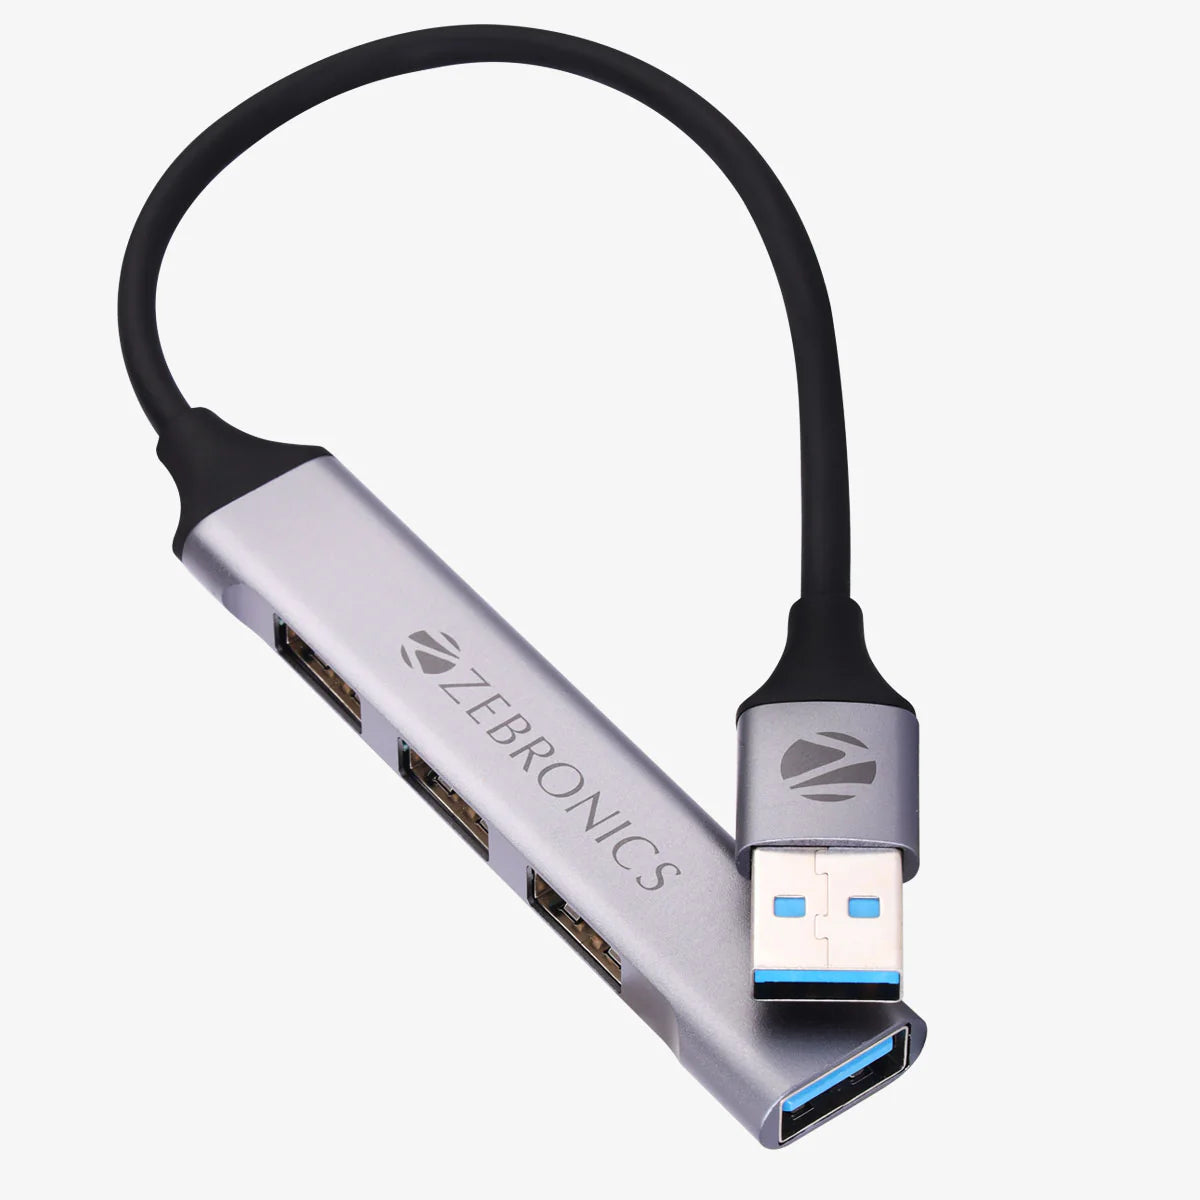 Zebronics 200HB USB 3.0 4 Port hub